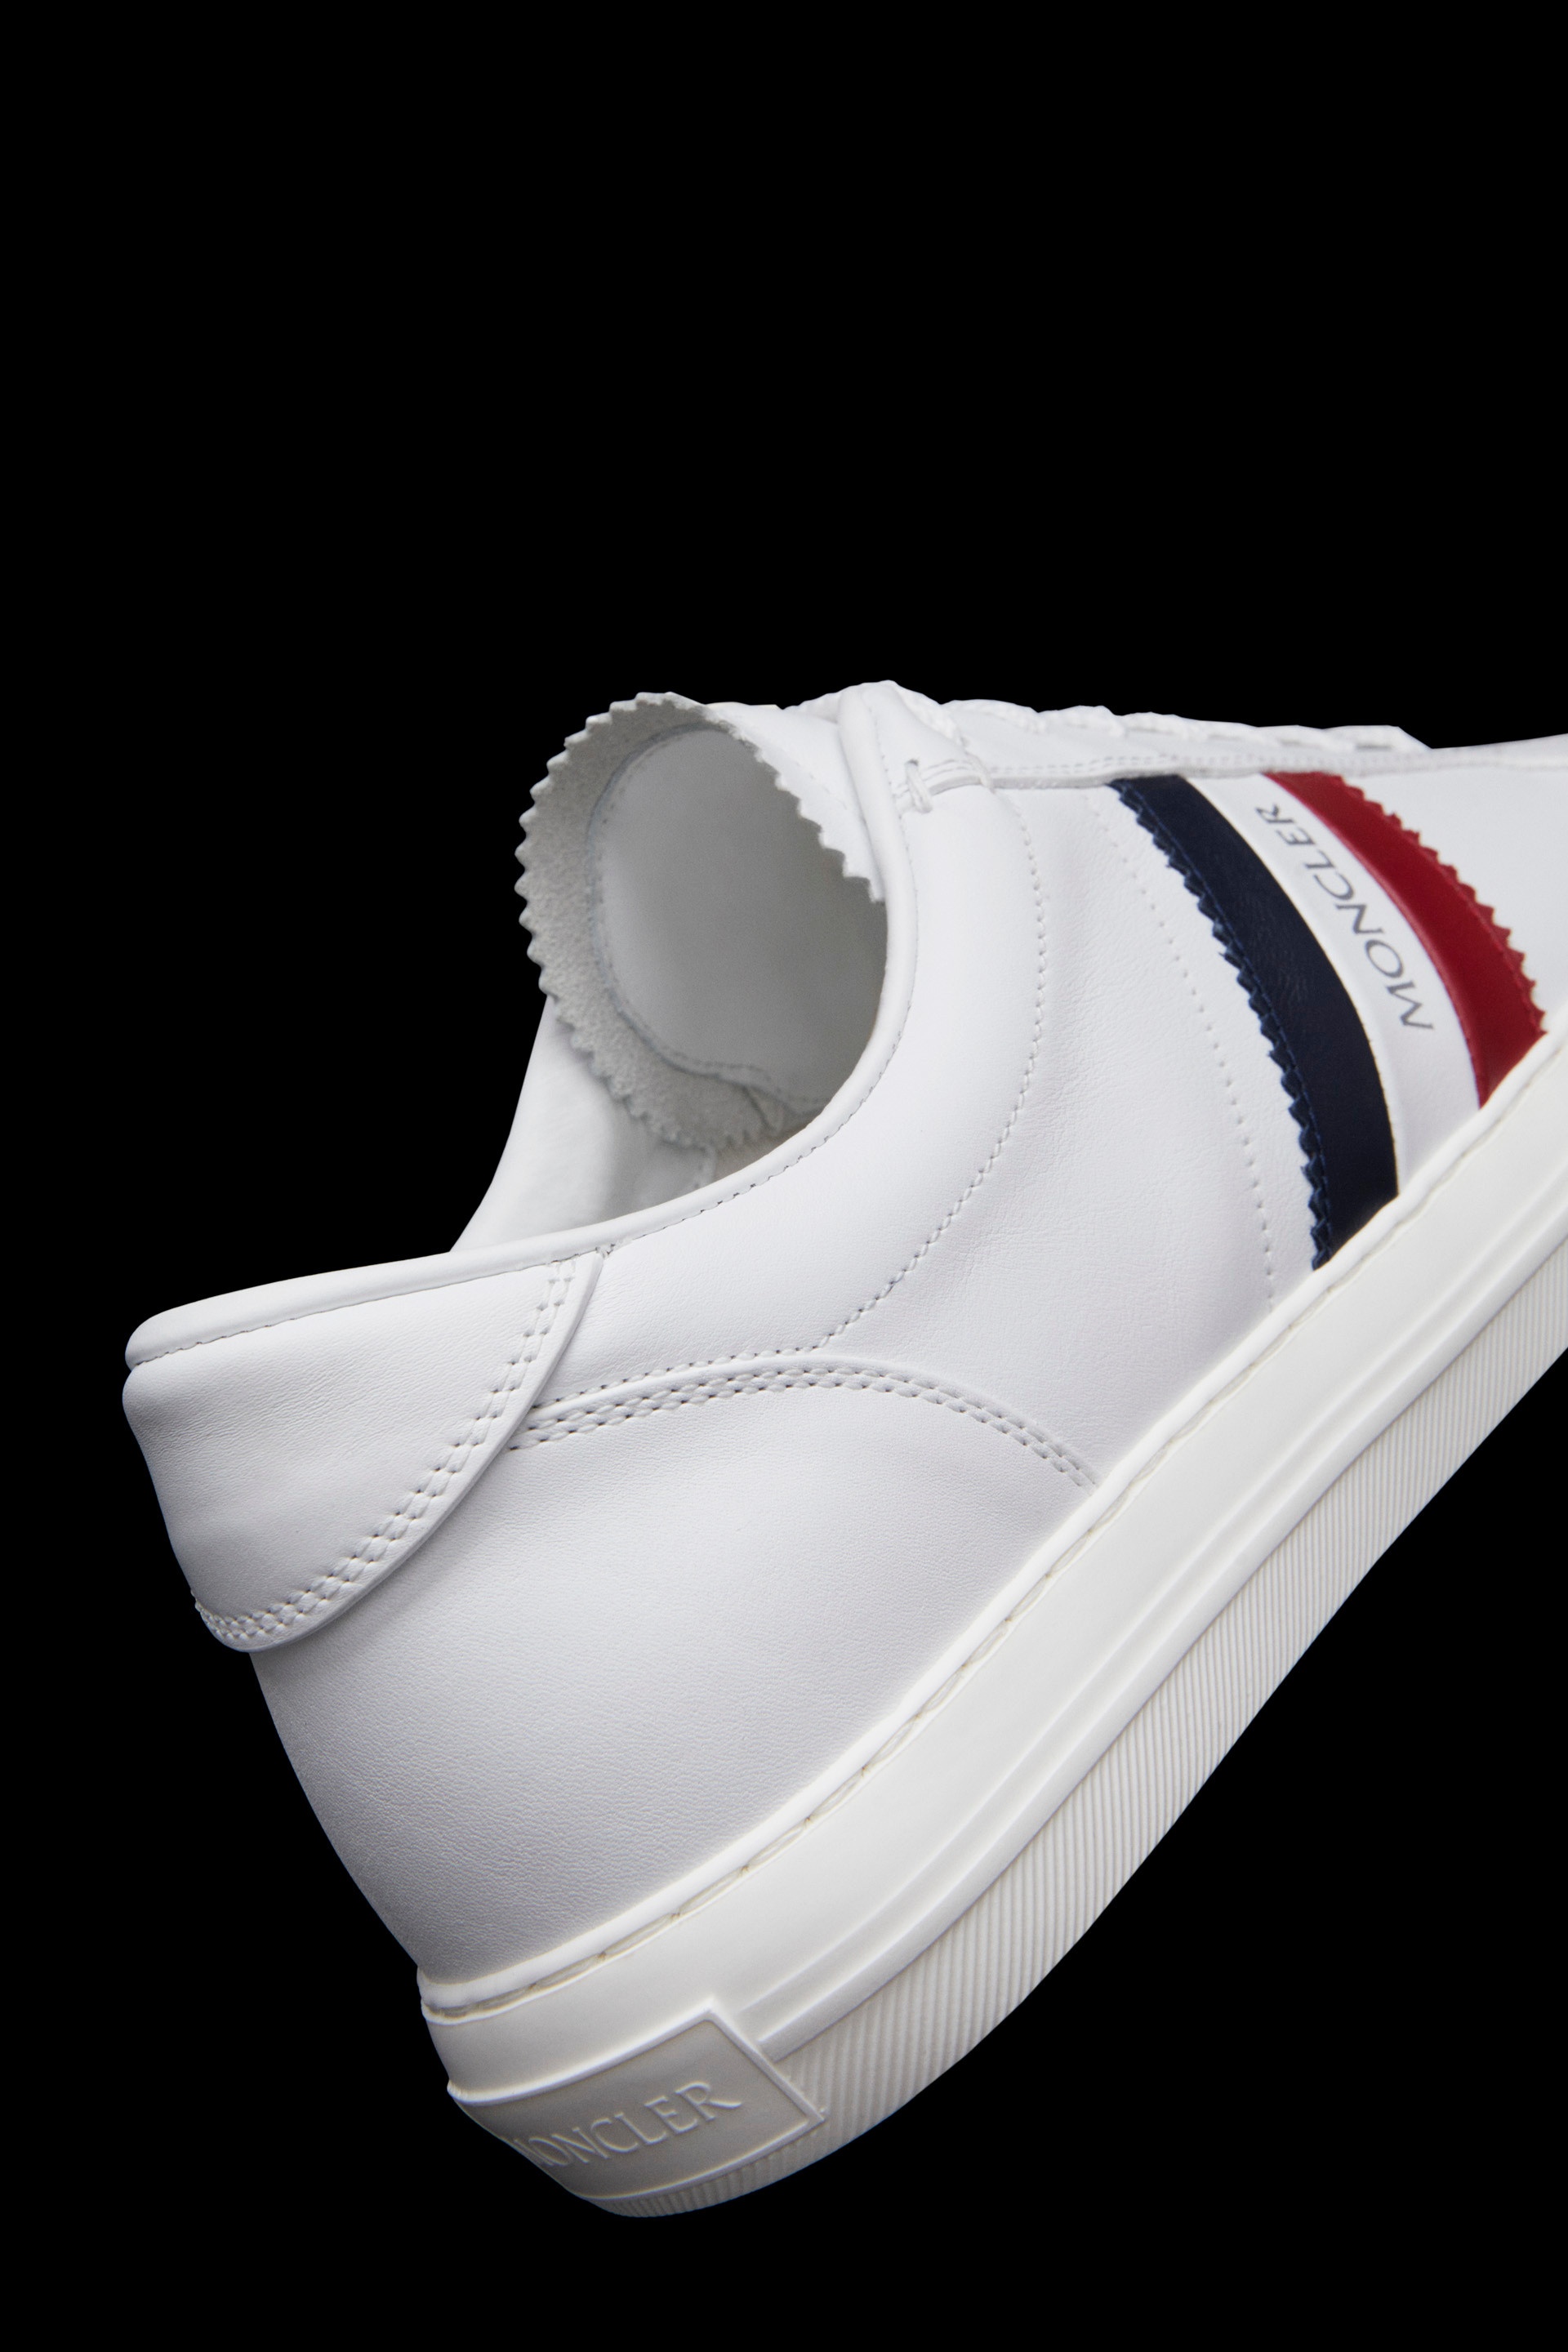 New Monaco Sneakers - 6